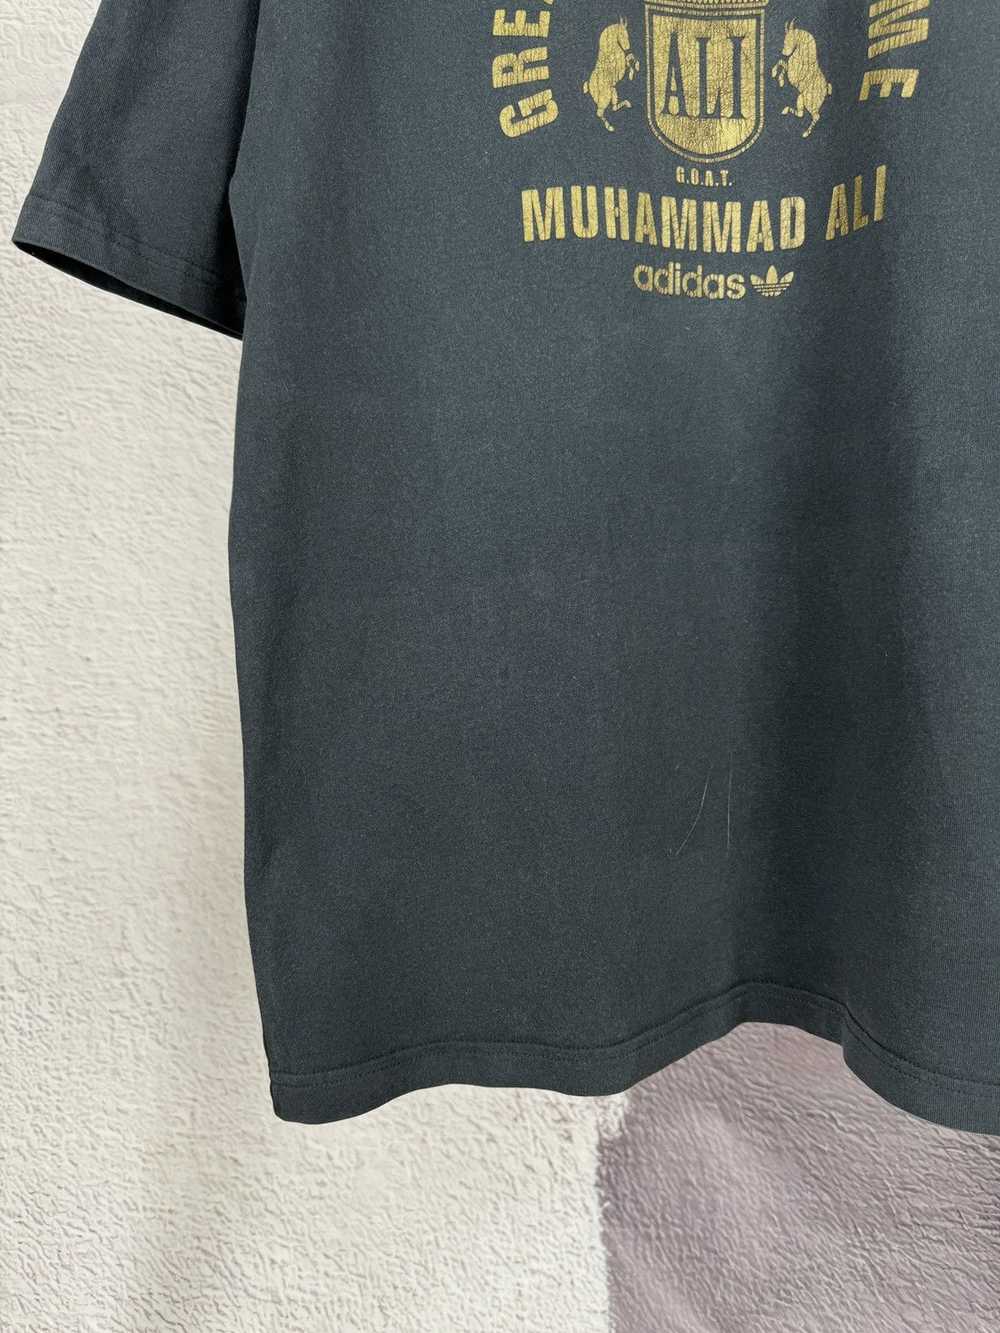 Adidas × Muhammad Ali × Vintage Adidas x Muhammad… - image 4